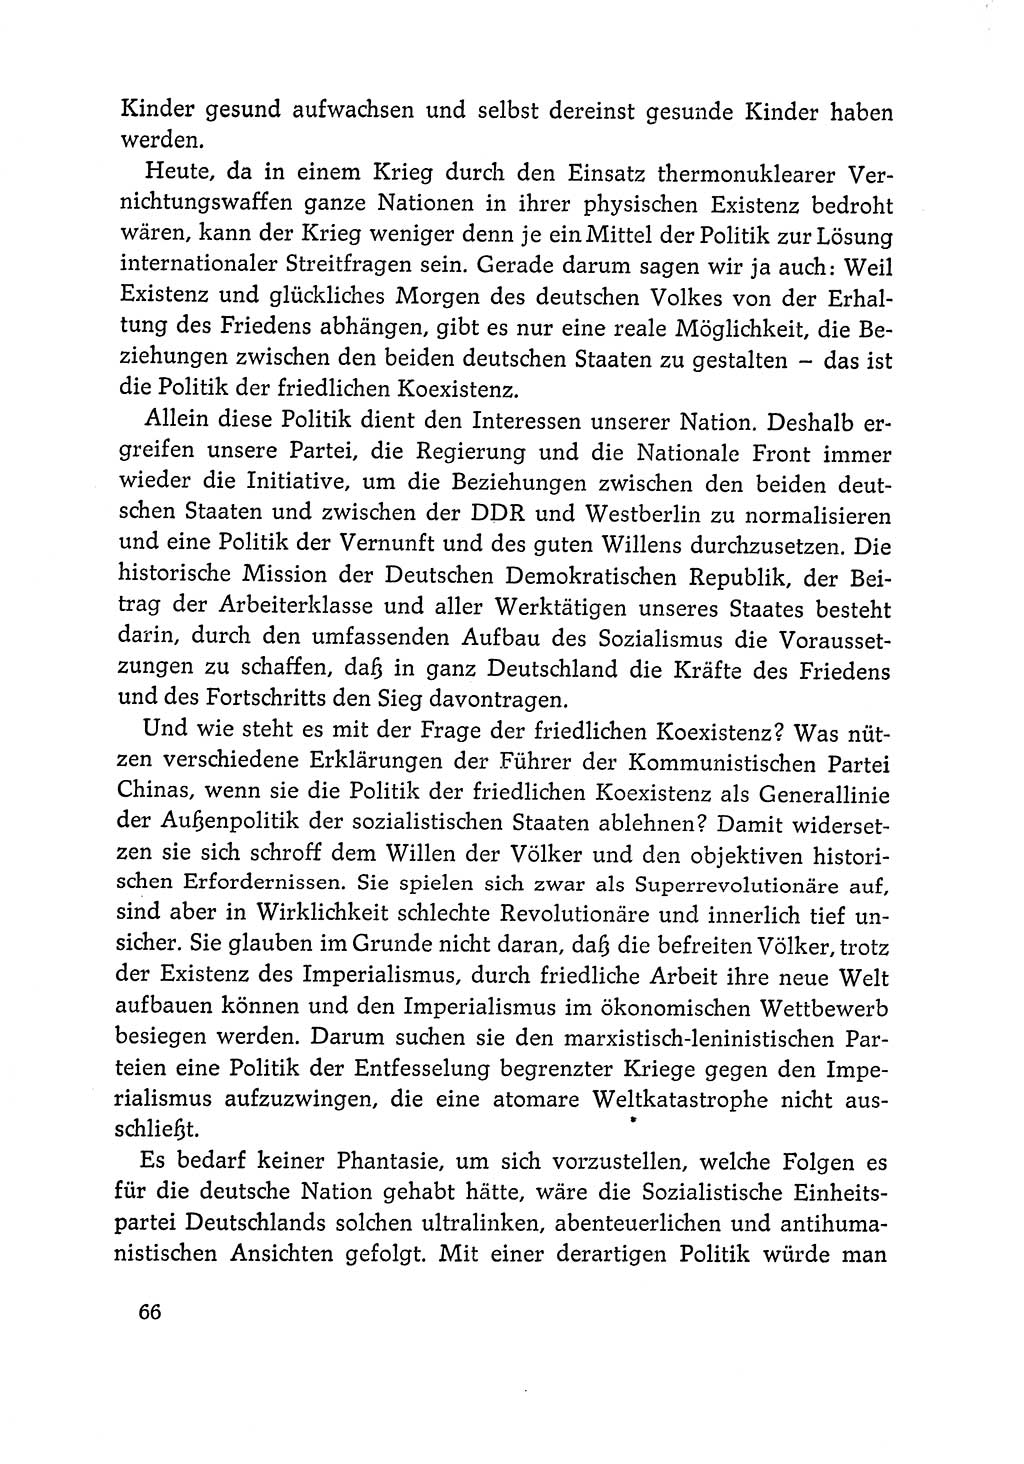 Dokumente der Sozialistischen Einheitspartei Deutschlands (SED) [Deutsche Demokratische Republik (DDR)] 1964-1965, Seite 66 (Dok. SED DDR 1964-1965, S. 66)